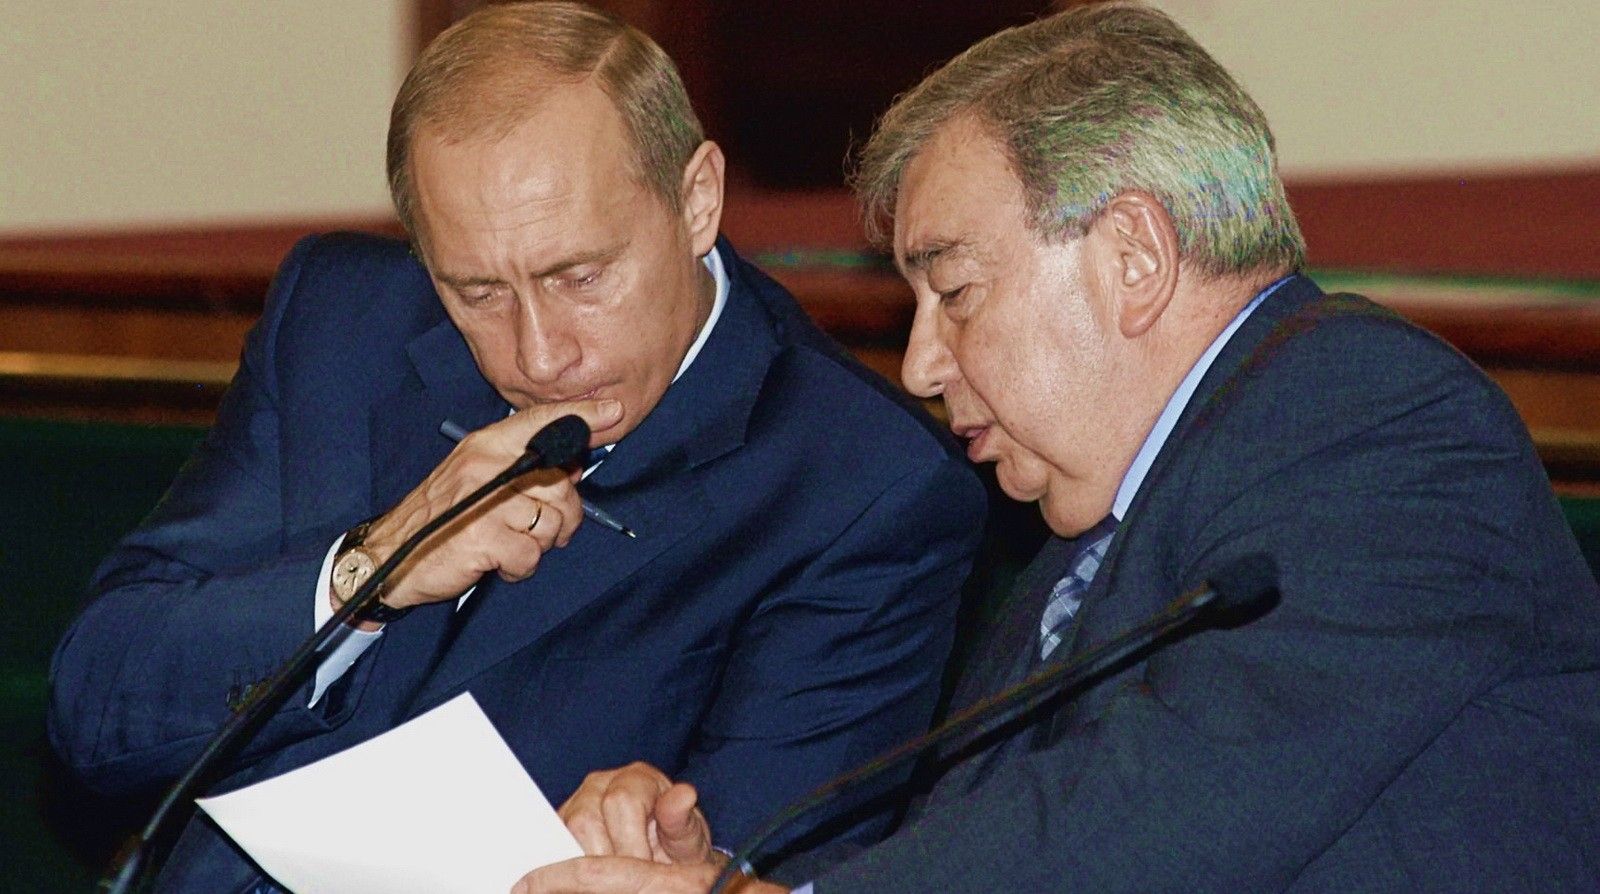 Рабочая встреча. Евгений Примаков и Владимир Путин